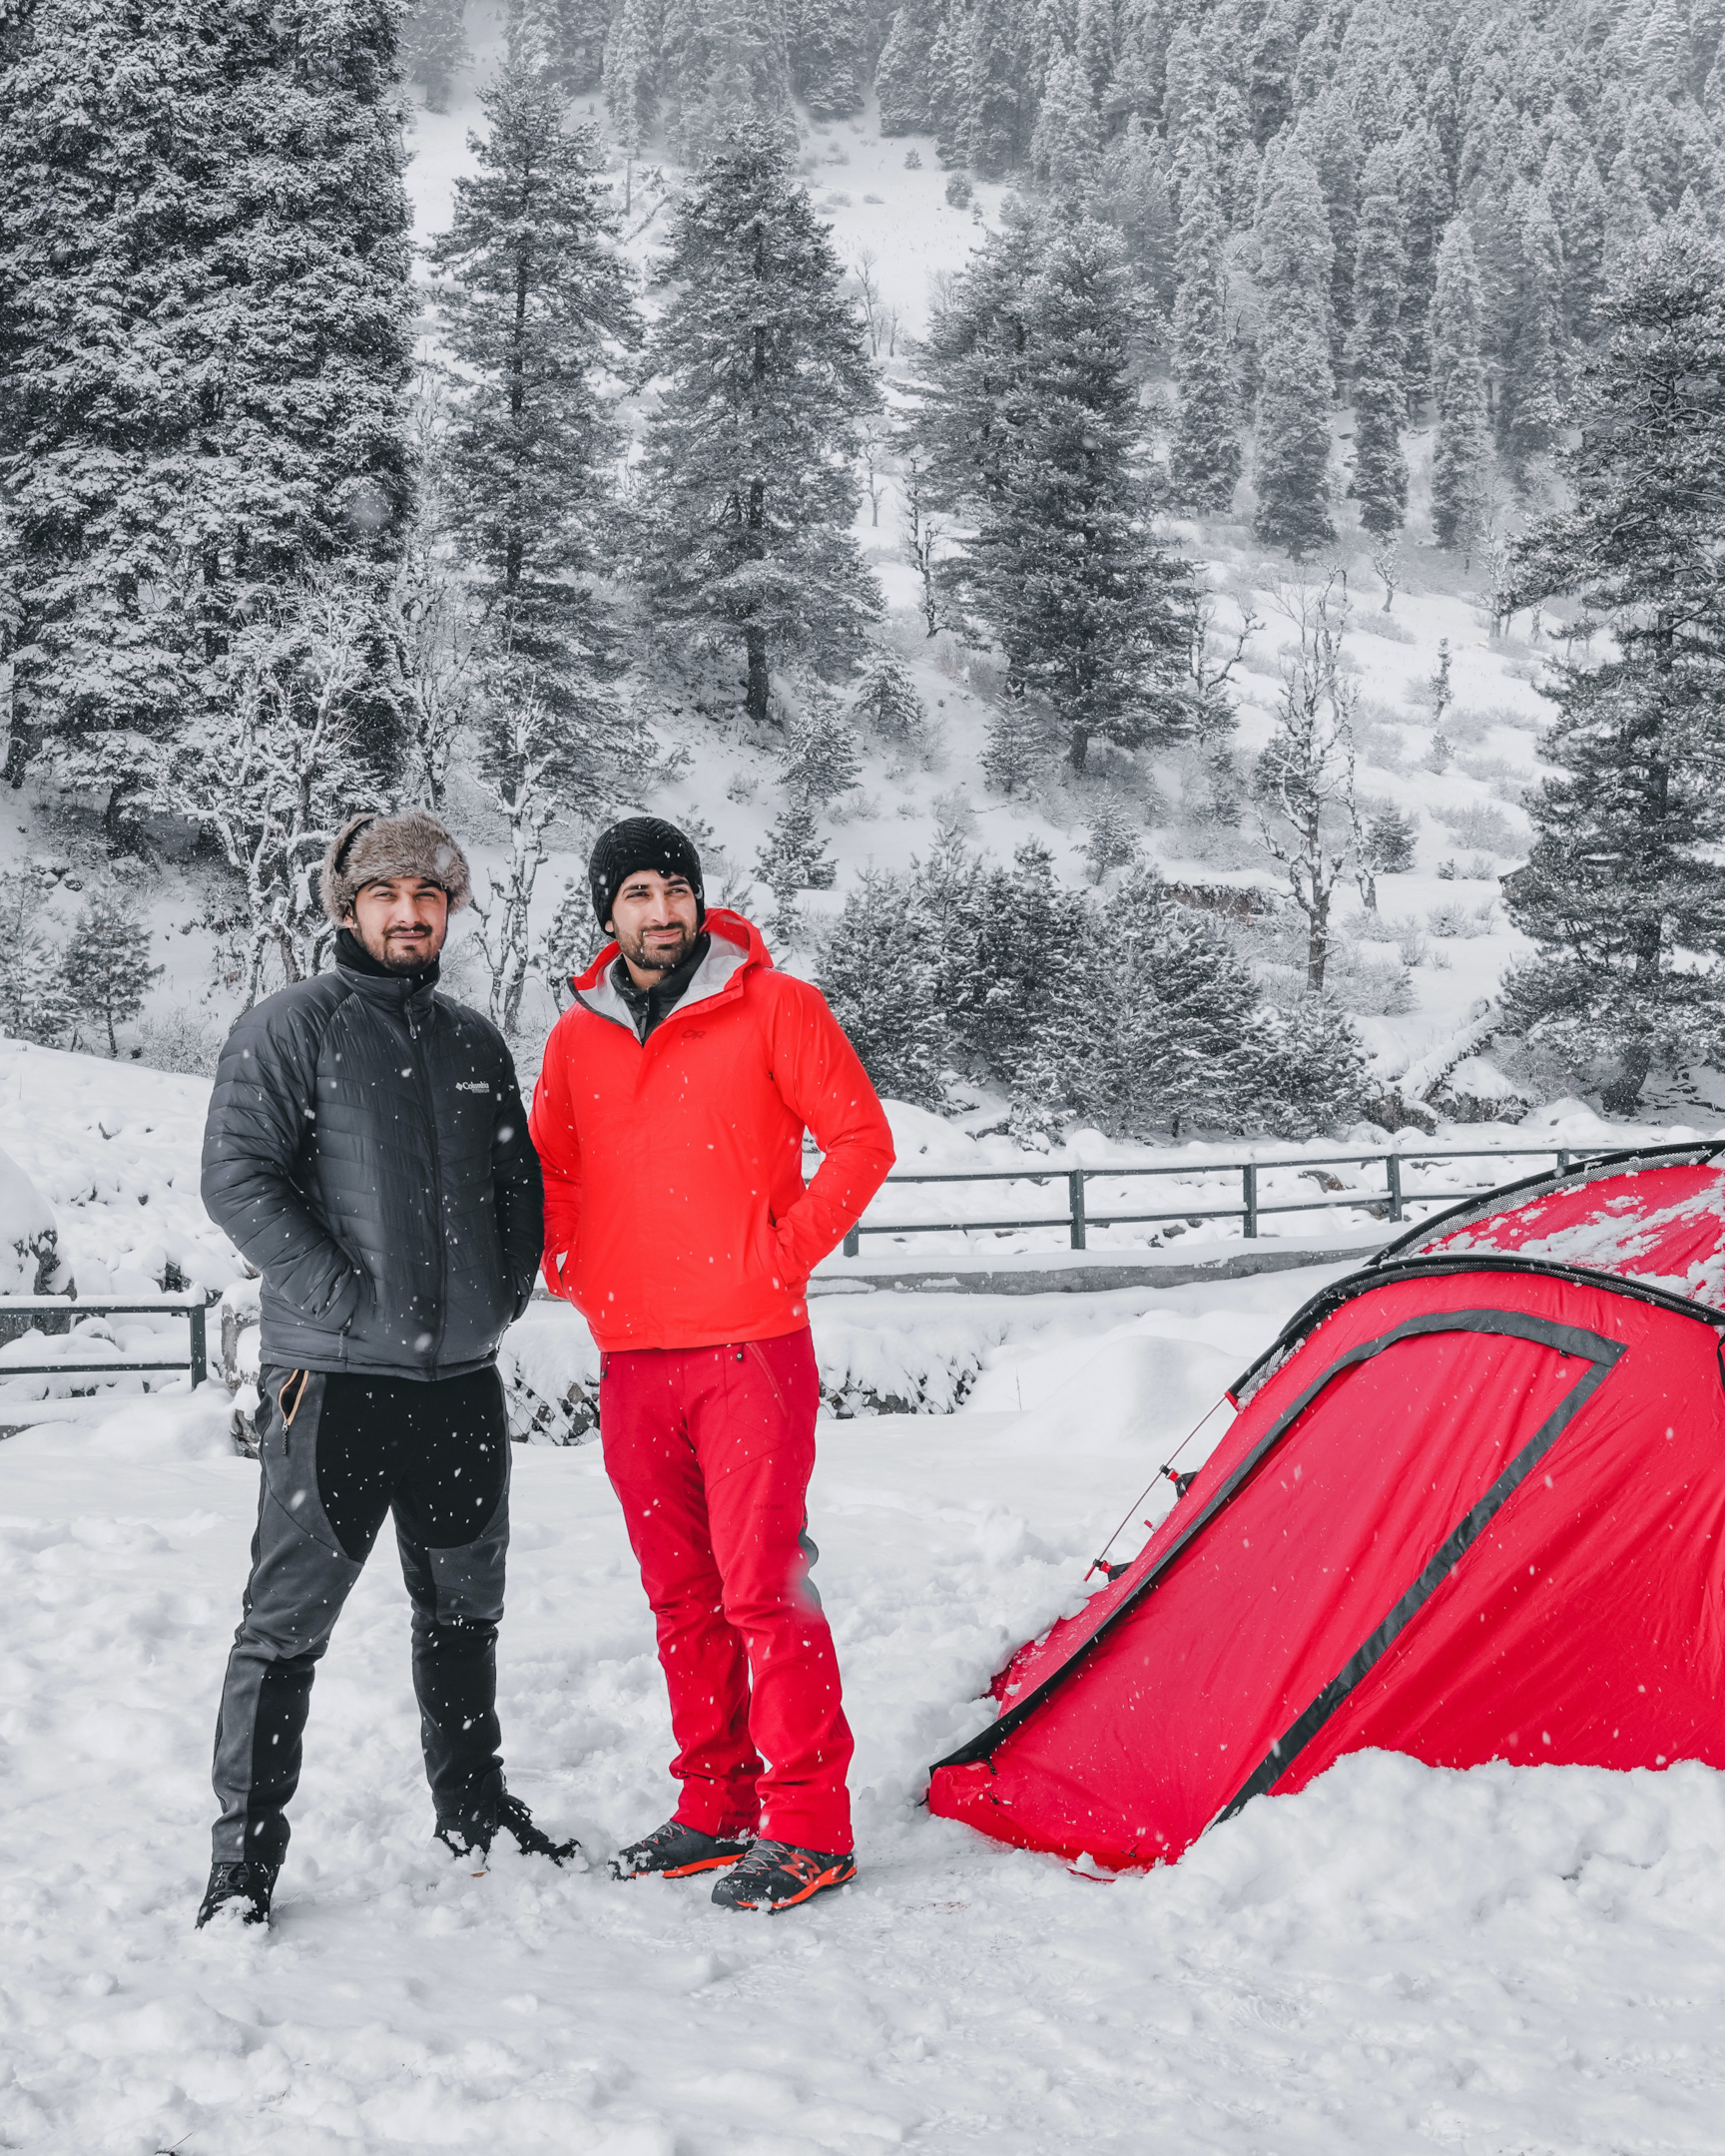 2 men standing in snow, red tent